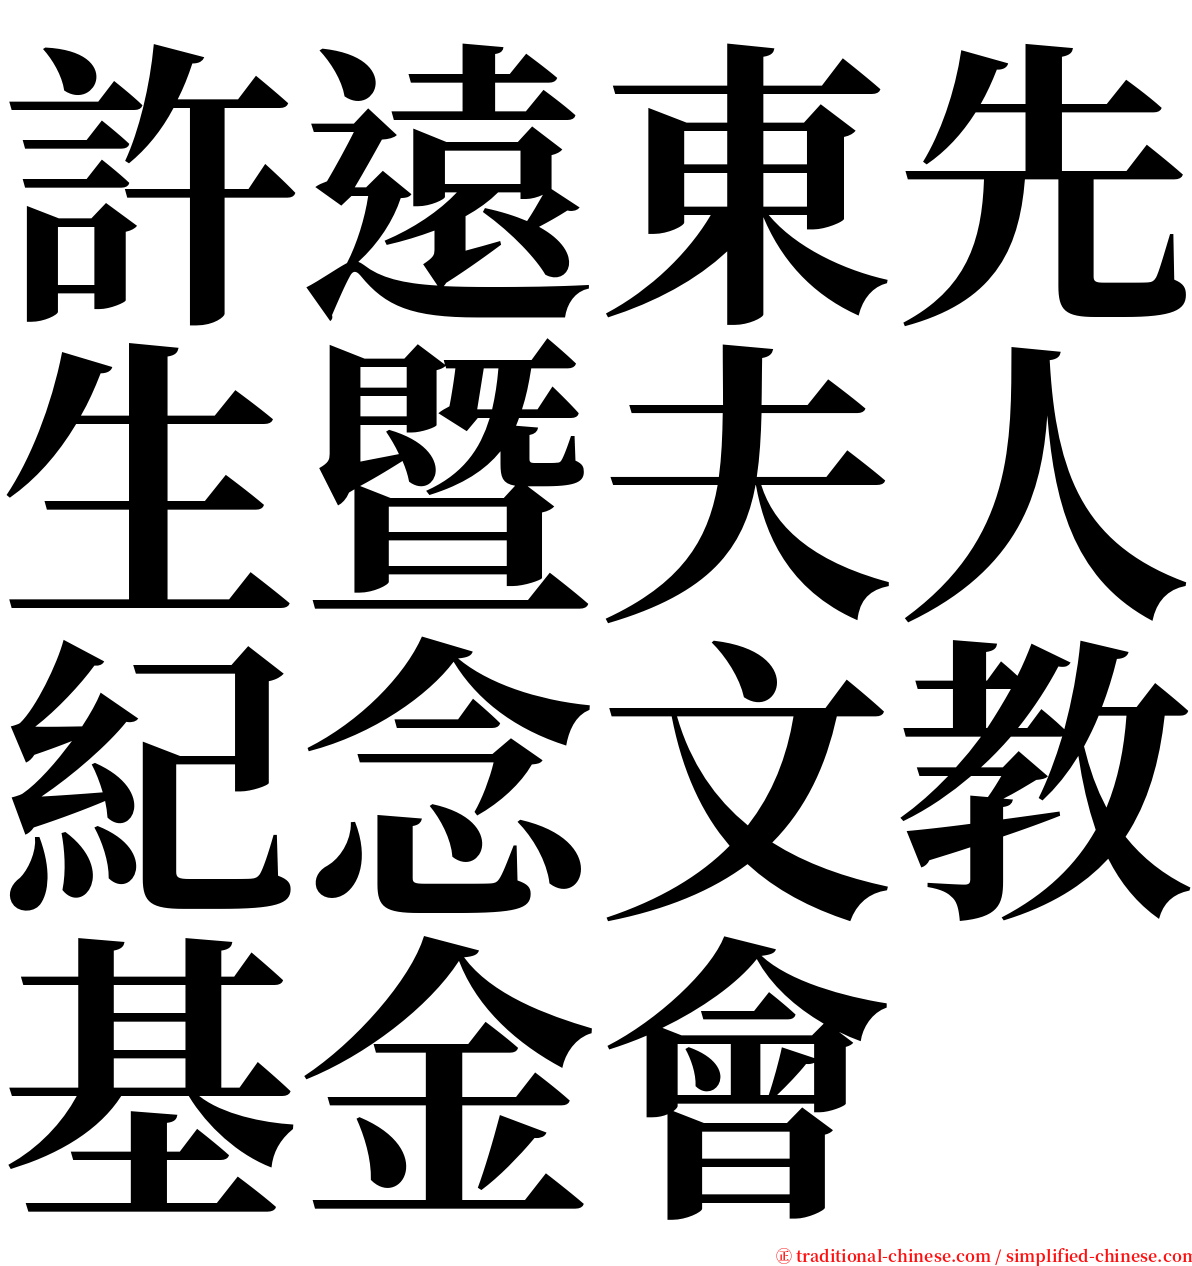 許遠東先生暨夫人紀念文教基金會 serif font